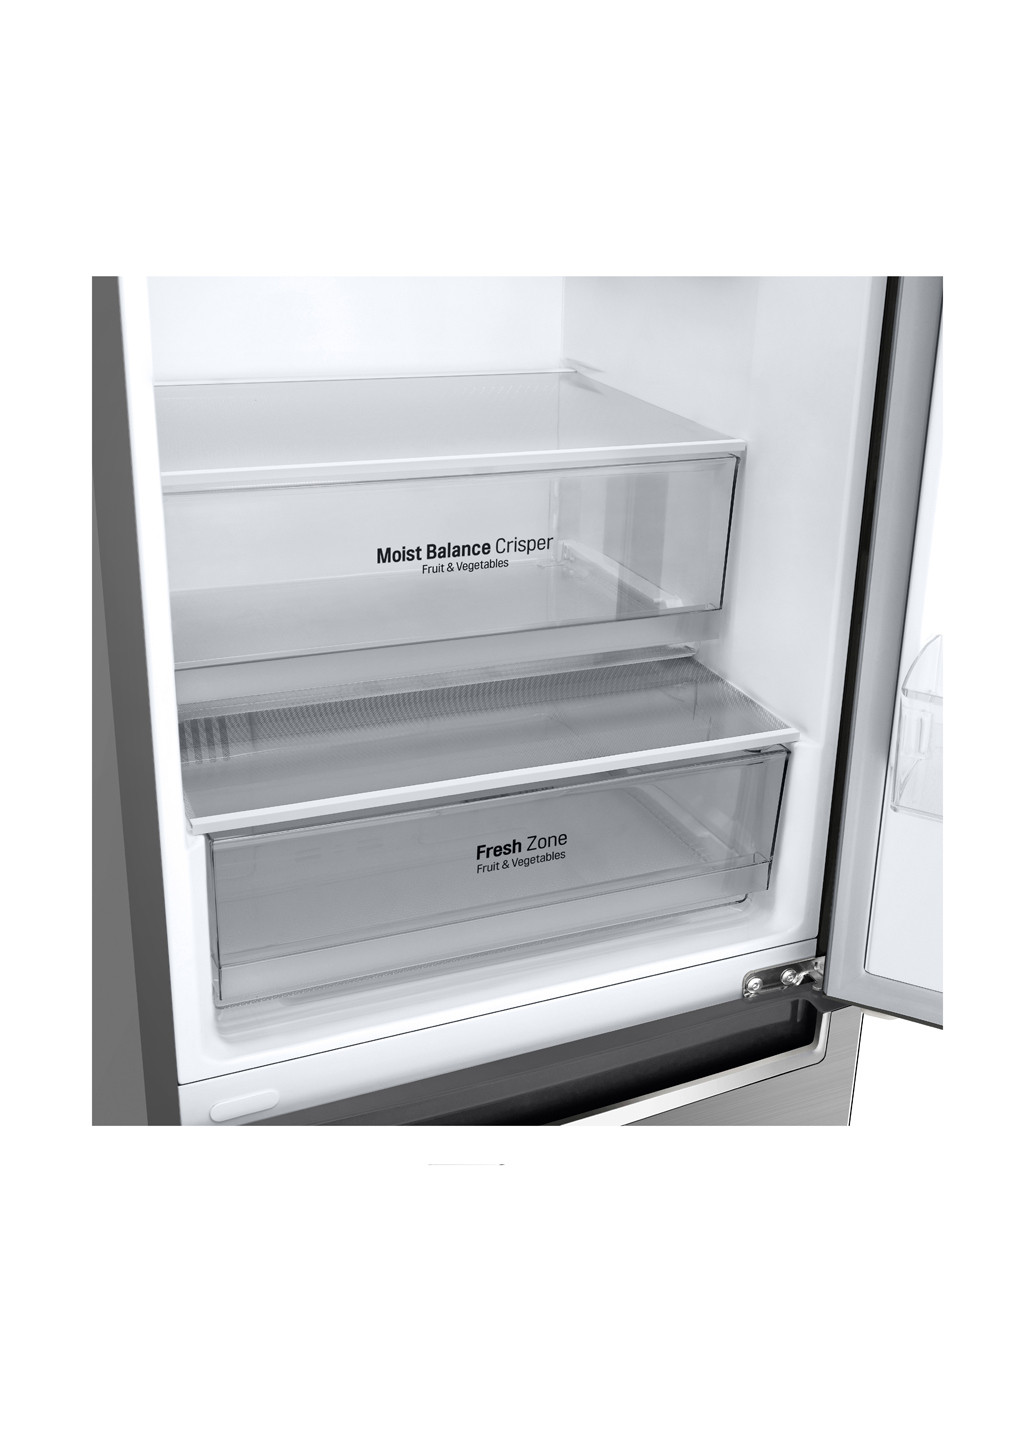 Холодильник LG GW-B509SMJZ срібний